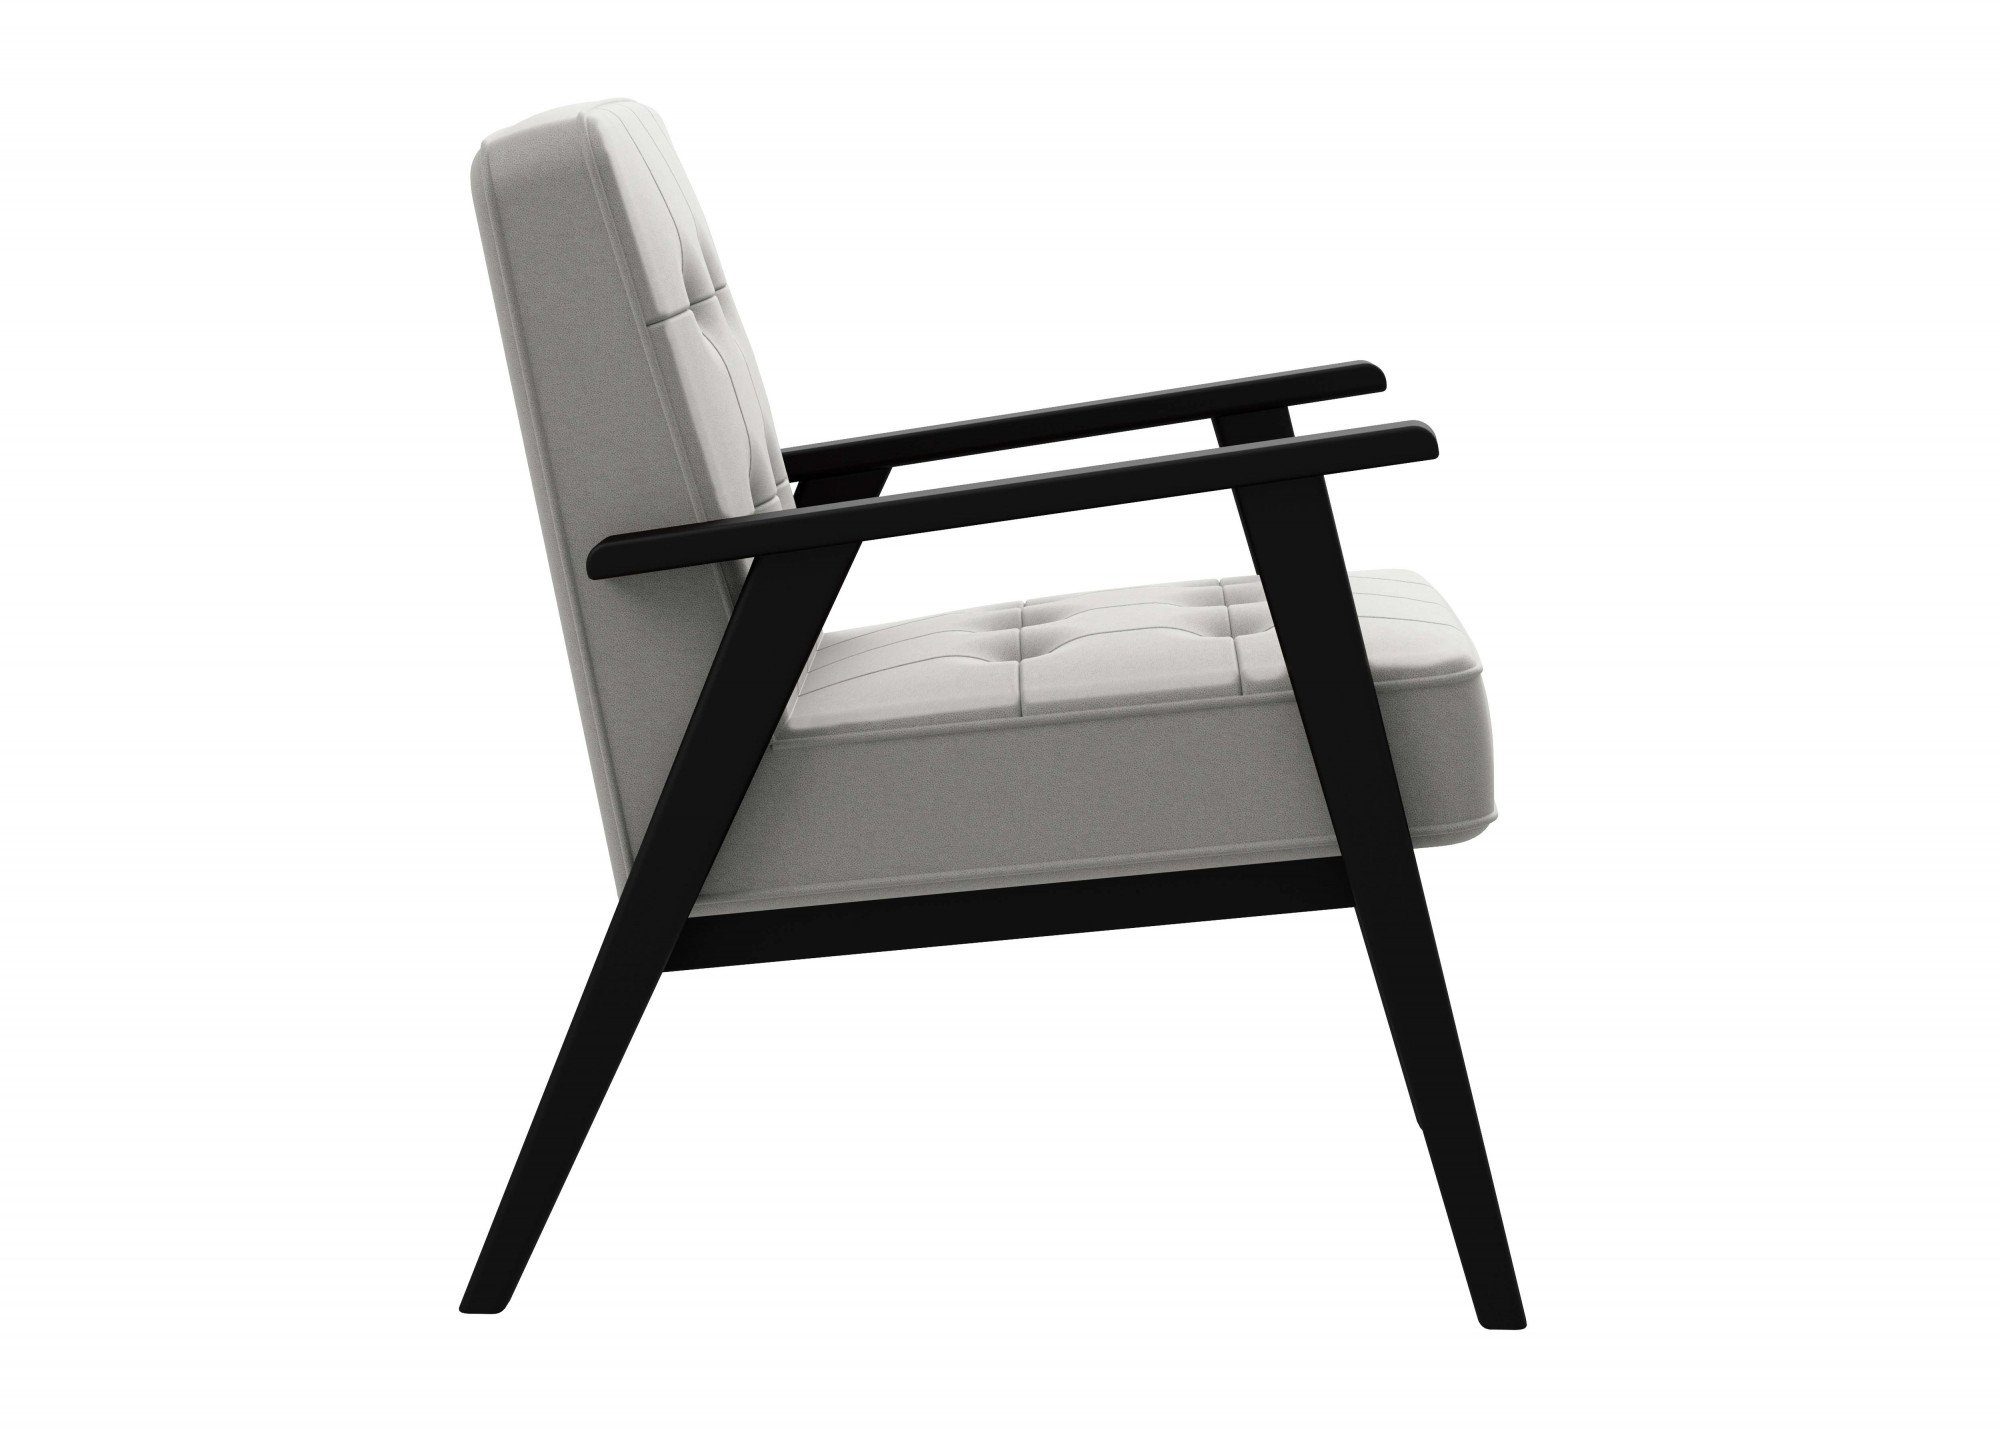 andas Sessel Alvared, Grey Massivholz, edles mit Natural Sitzkomfort in hohen Lederoptik, aus Design für Wellenunterfederung